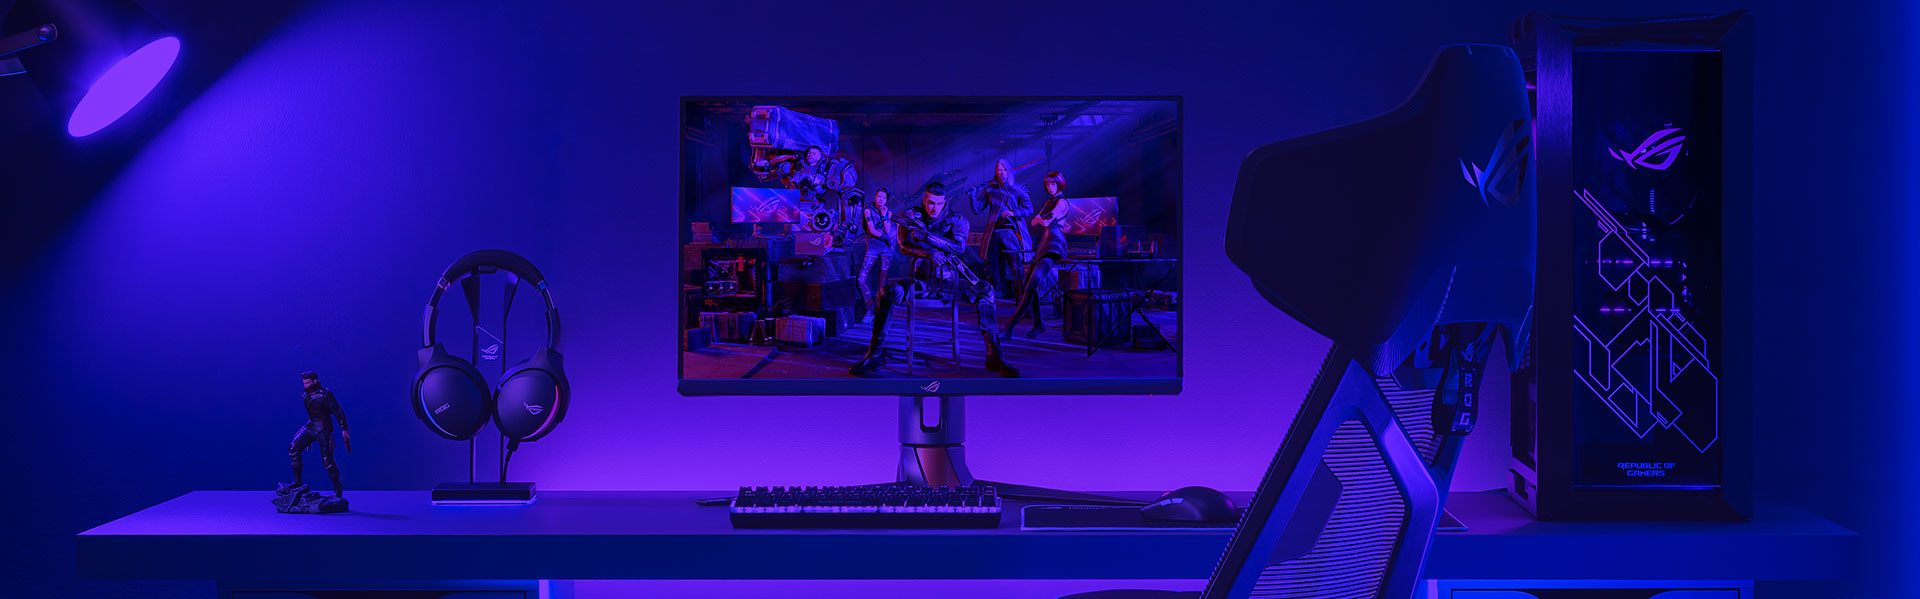 Installation d'un moniteur gaming ROG avec un PC, un clavier, une souris et un casque sur le bureau